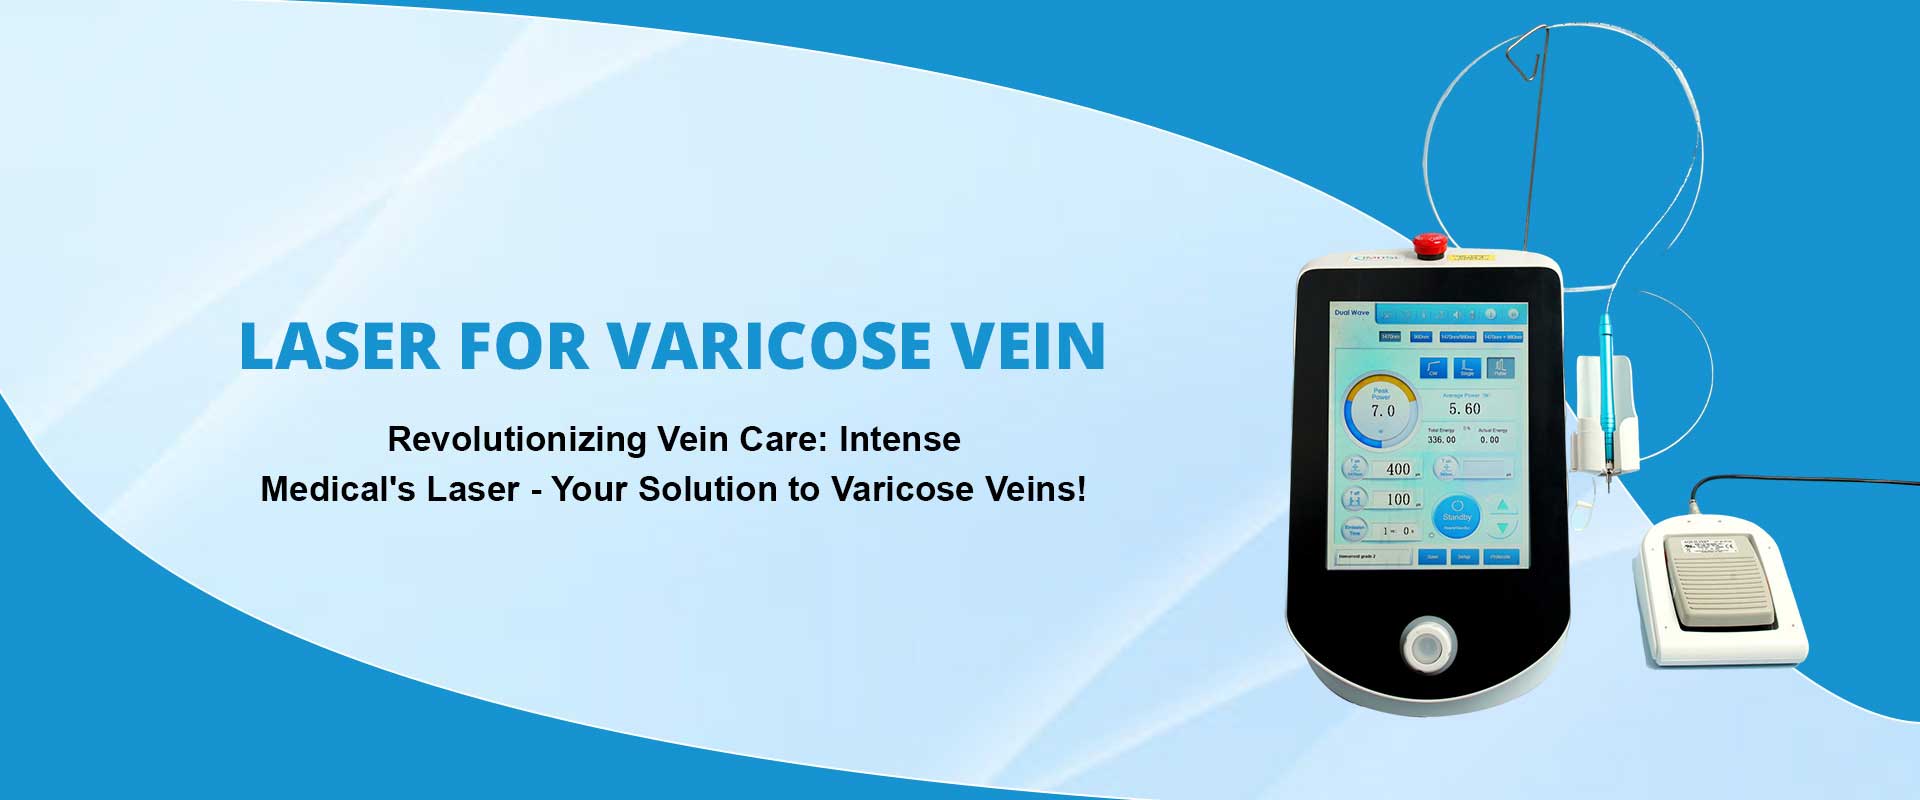 Laser For Varicose Vein Manufacturers in Delhi